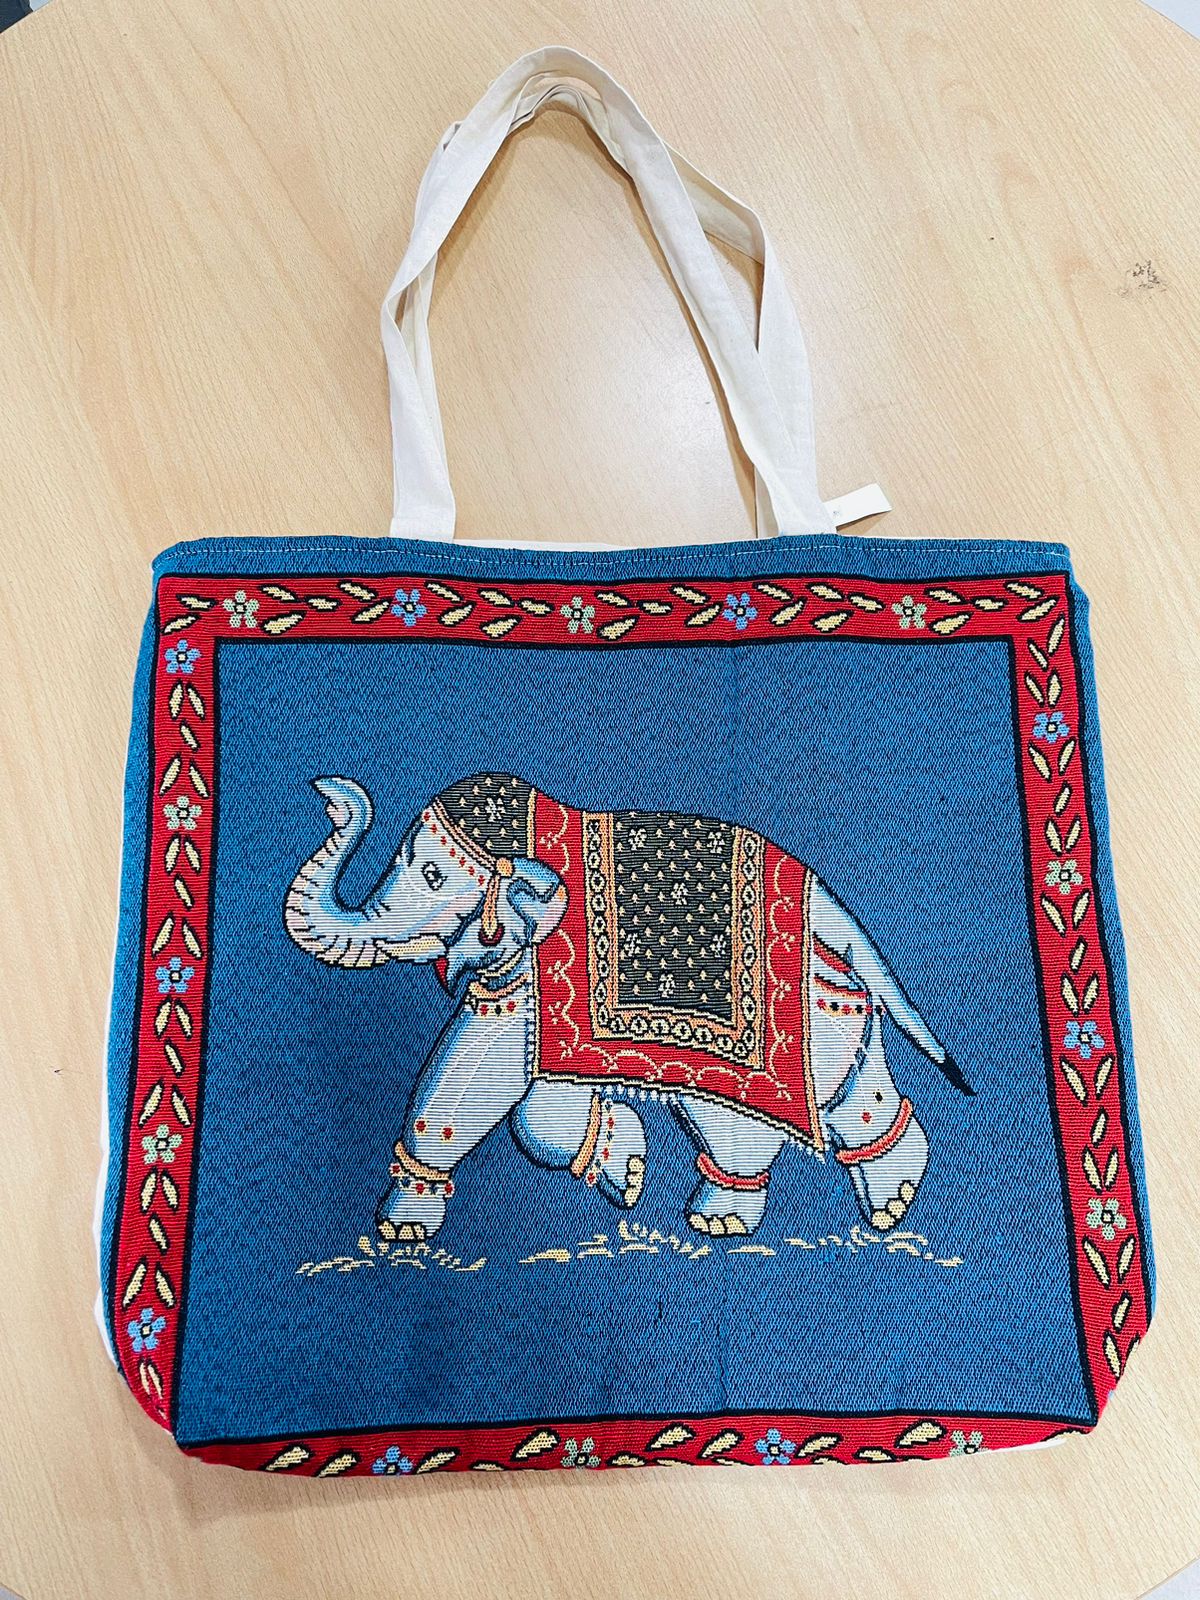 Handmade Printed Side Bag For Girls Women